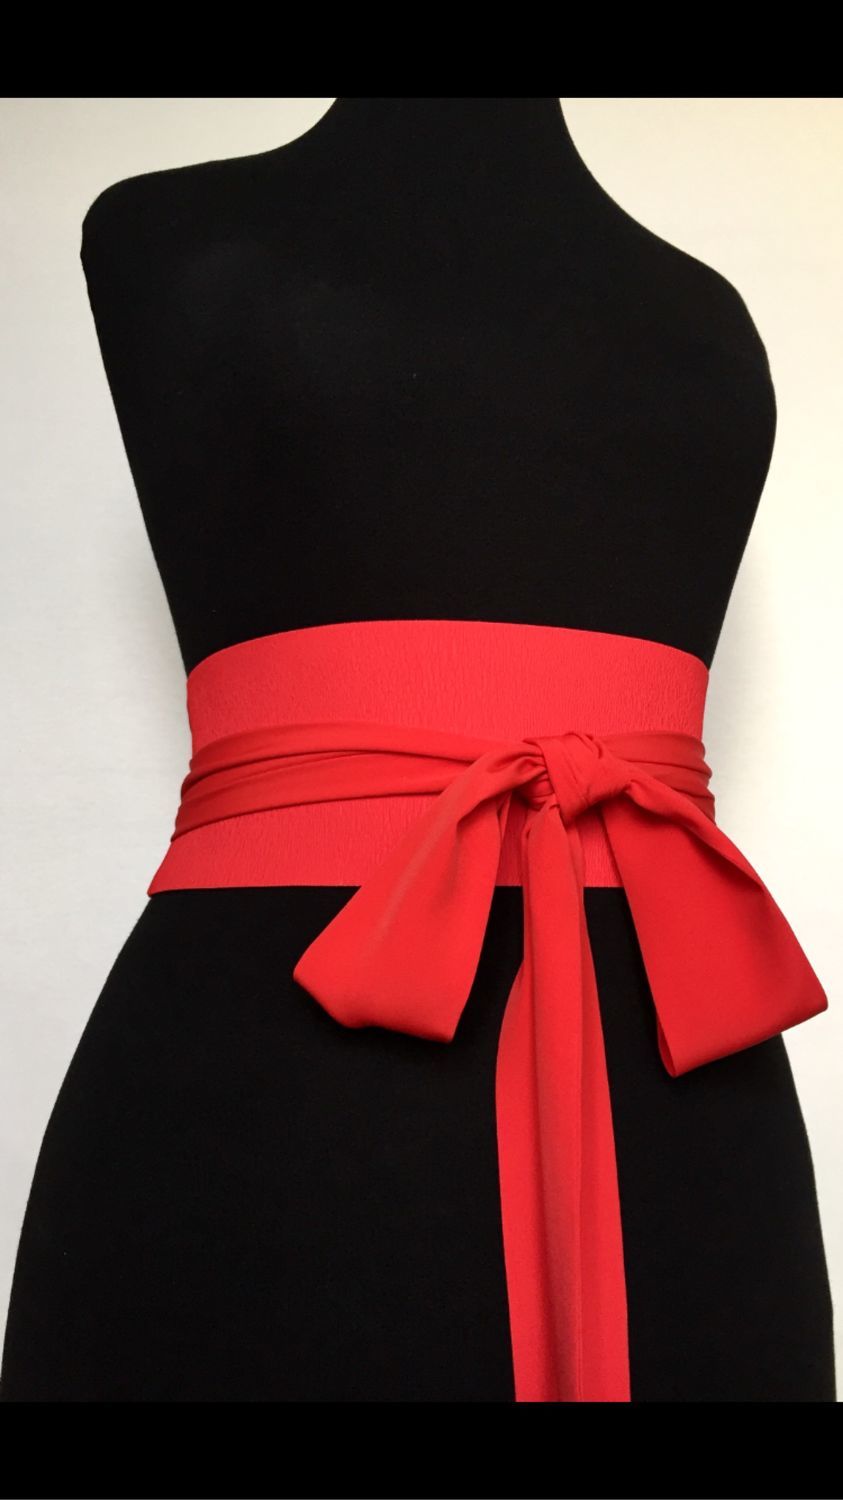 Красный пояс на черном платье